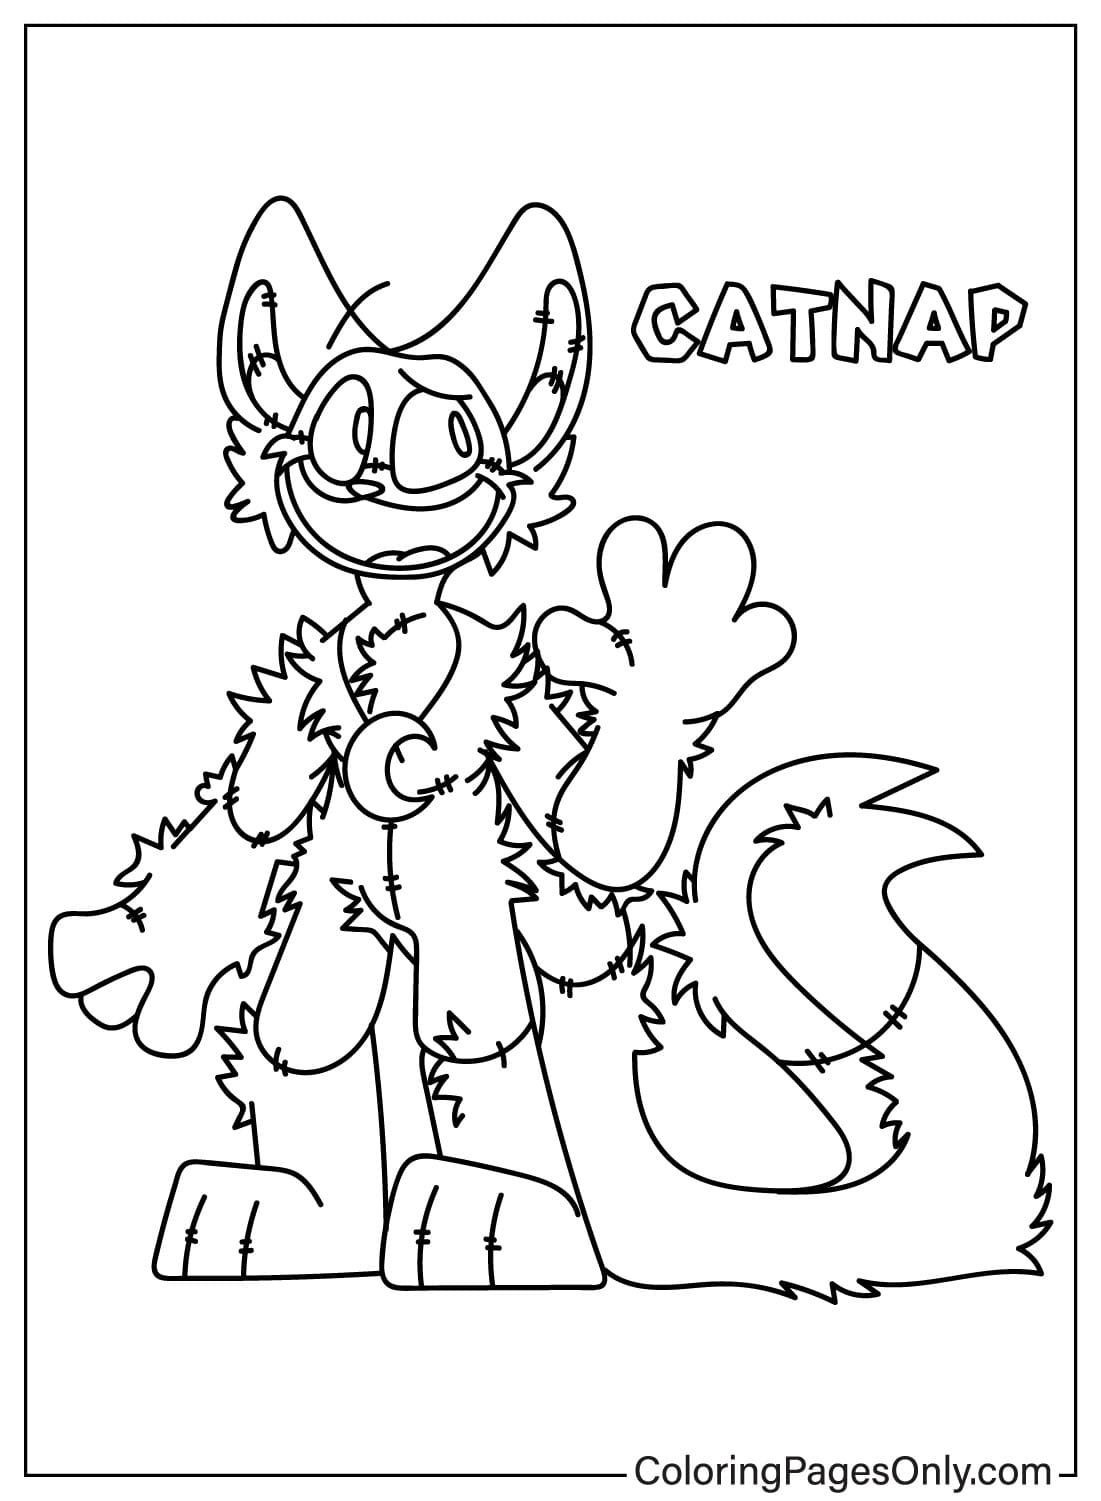 CatNap-Malseite von CatNap